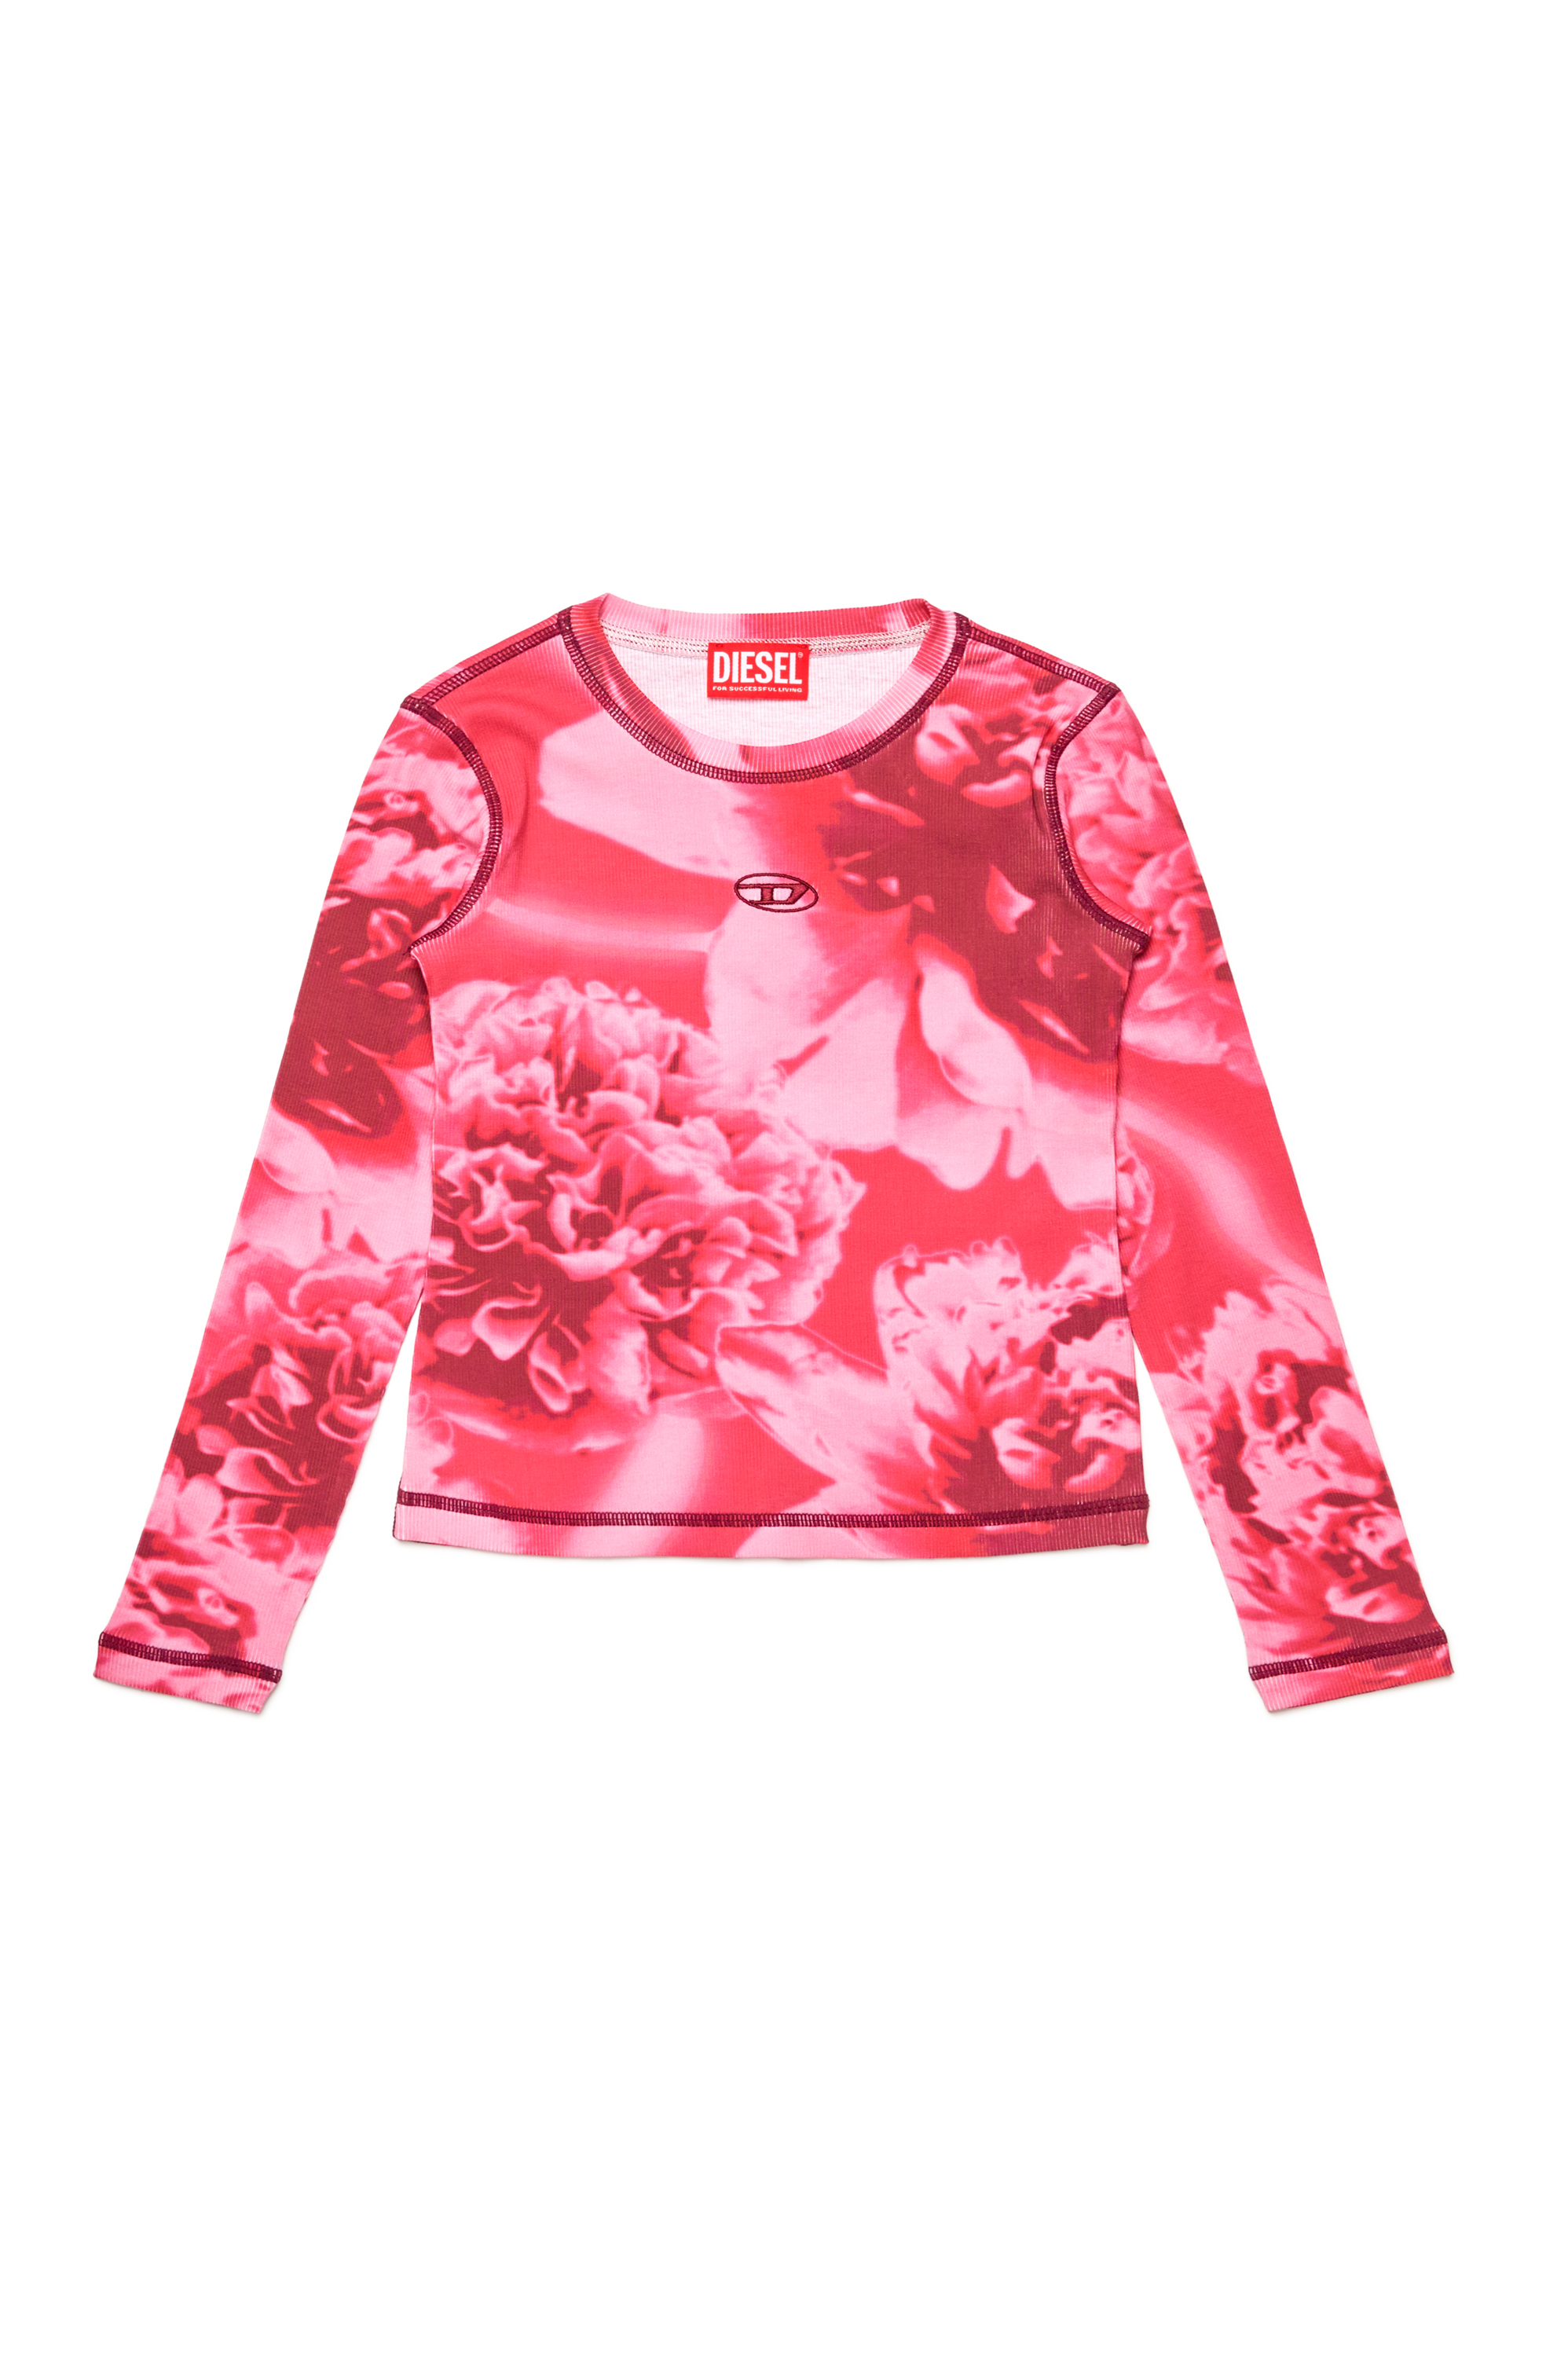 Diesel - TCLAUDY, Damen Geripptes Top mit floralem Print in Rosa - Image 1